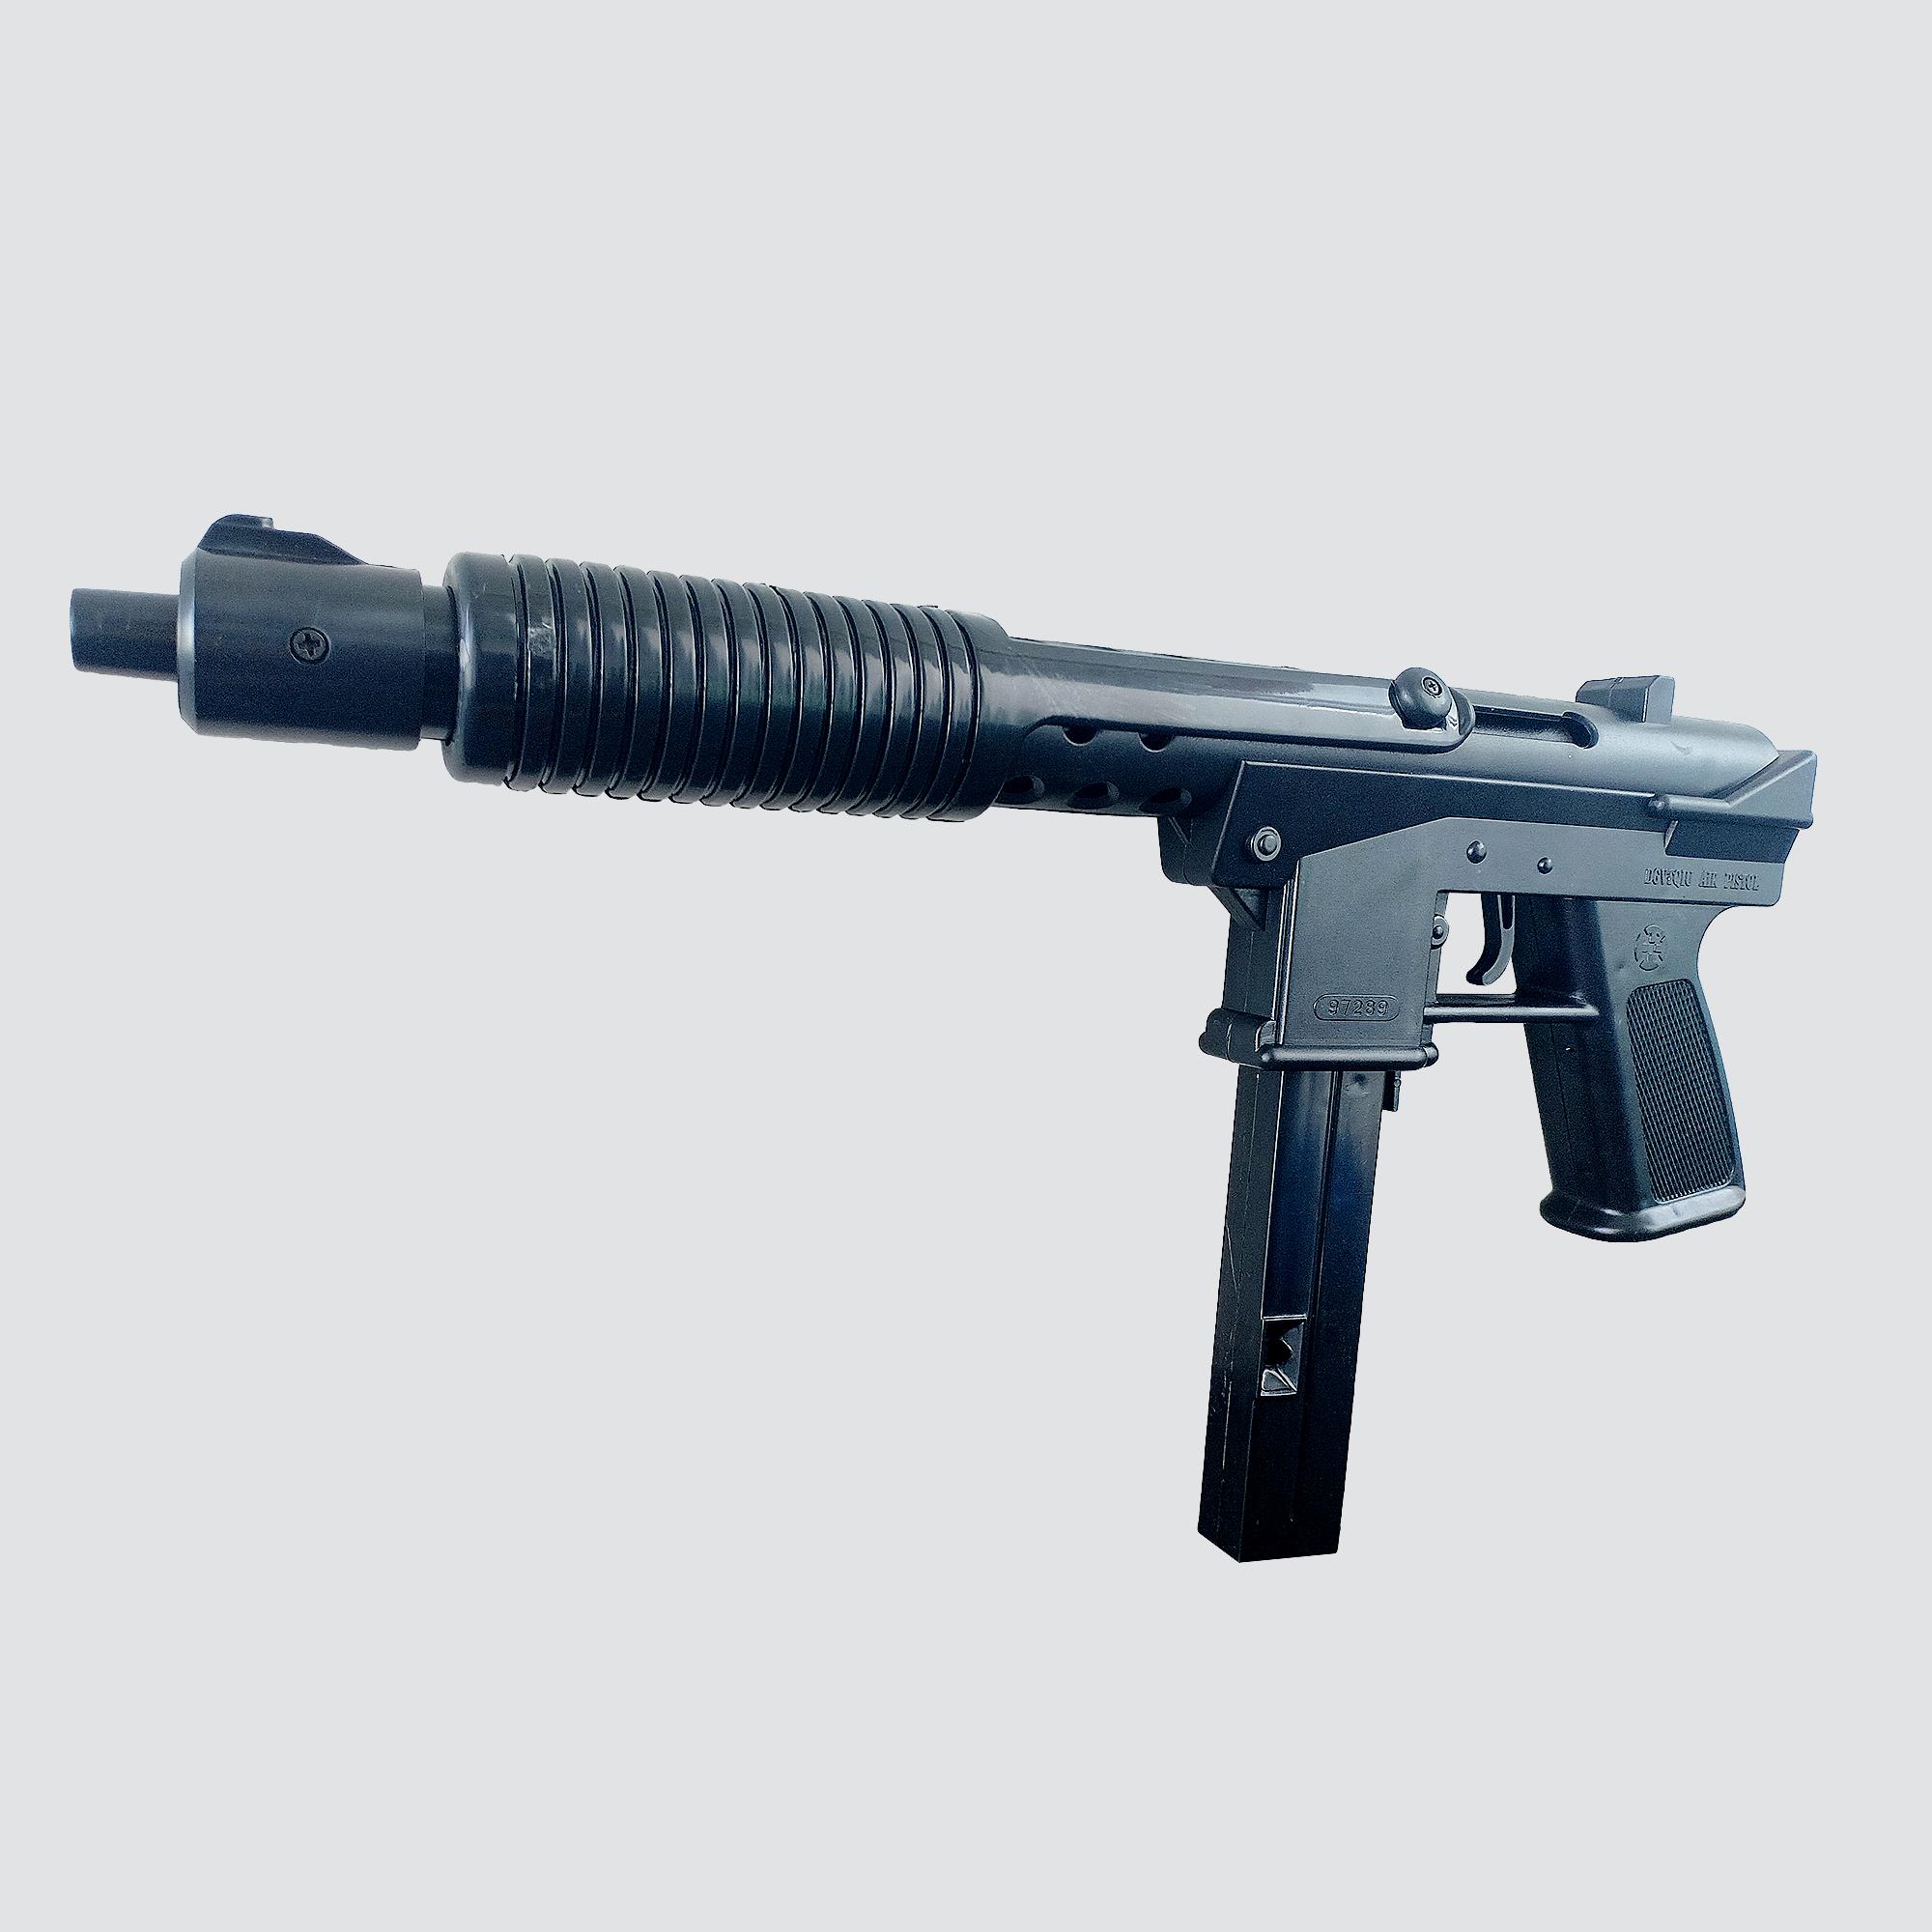 PT Airsoftปืนของเล่น ปืนอัดลม สีดำ  ใส่กระสุนได้เยอะ แถมกระสุน 100ลูก